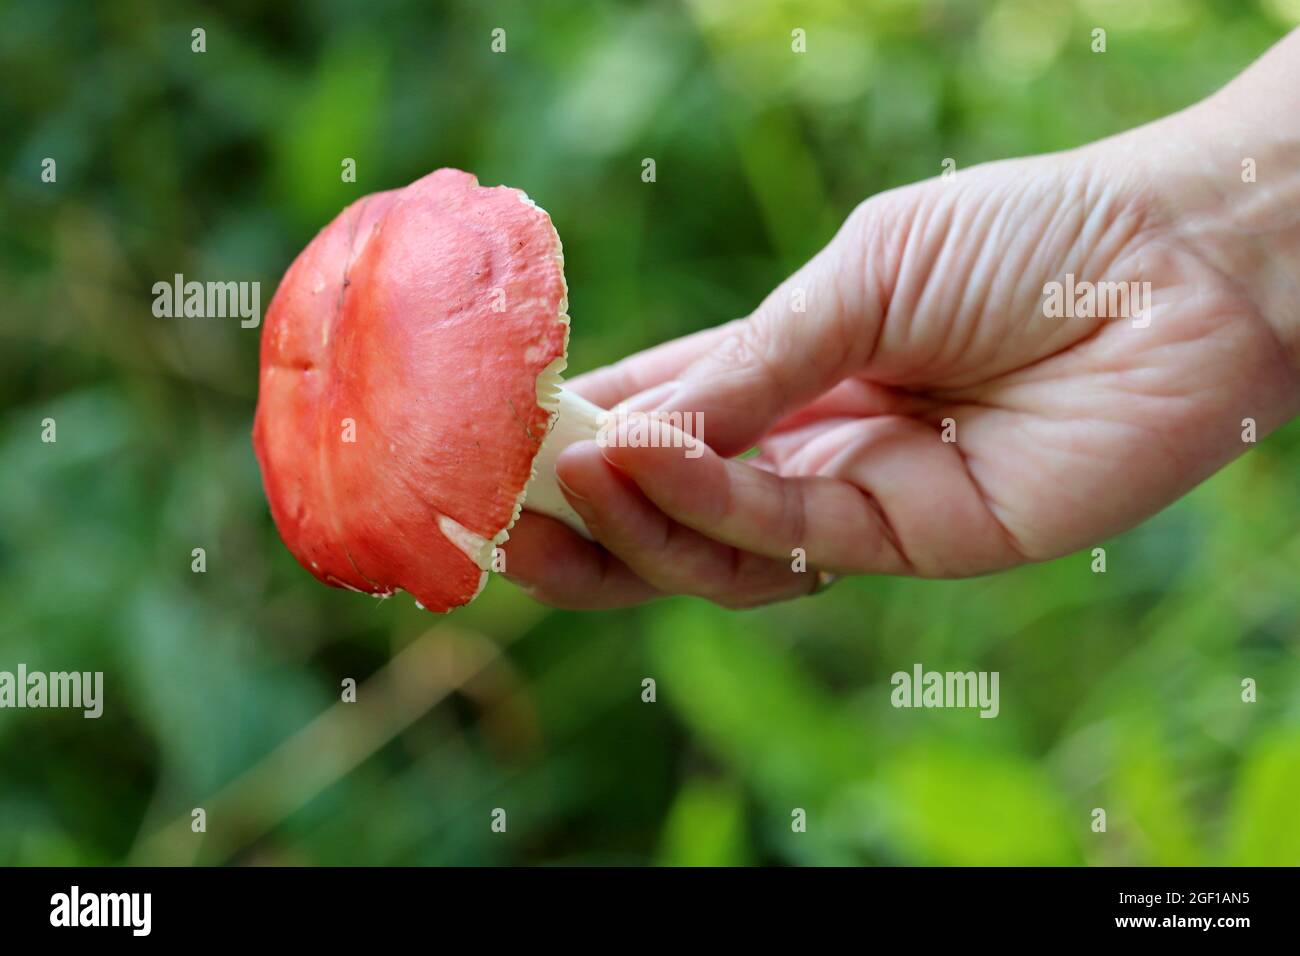 Fungo russula con cappuccio rosso e gamba bianca in mano femmina su sfondo di erba. Raccolta di funghi commestibili in una foresta Foto Stock